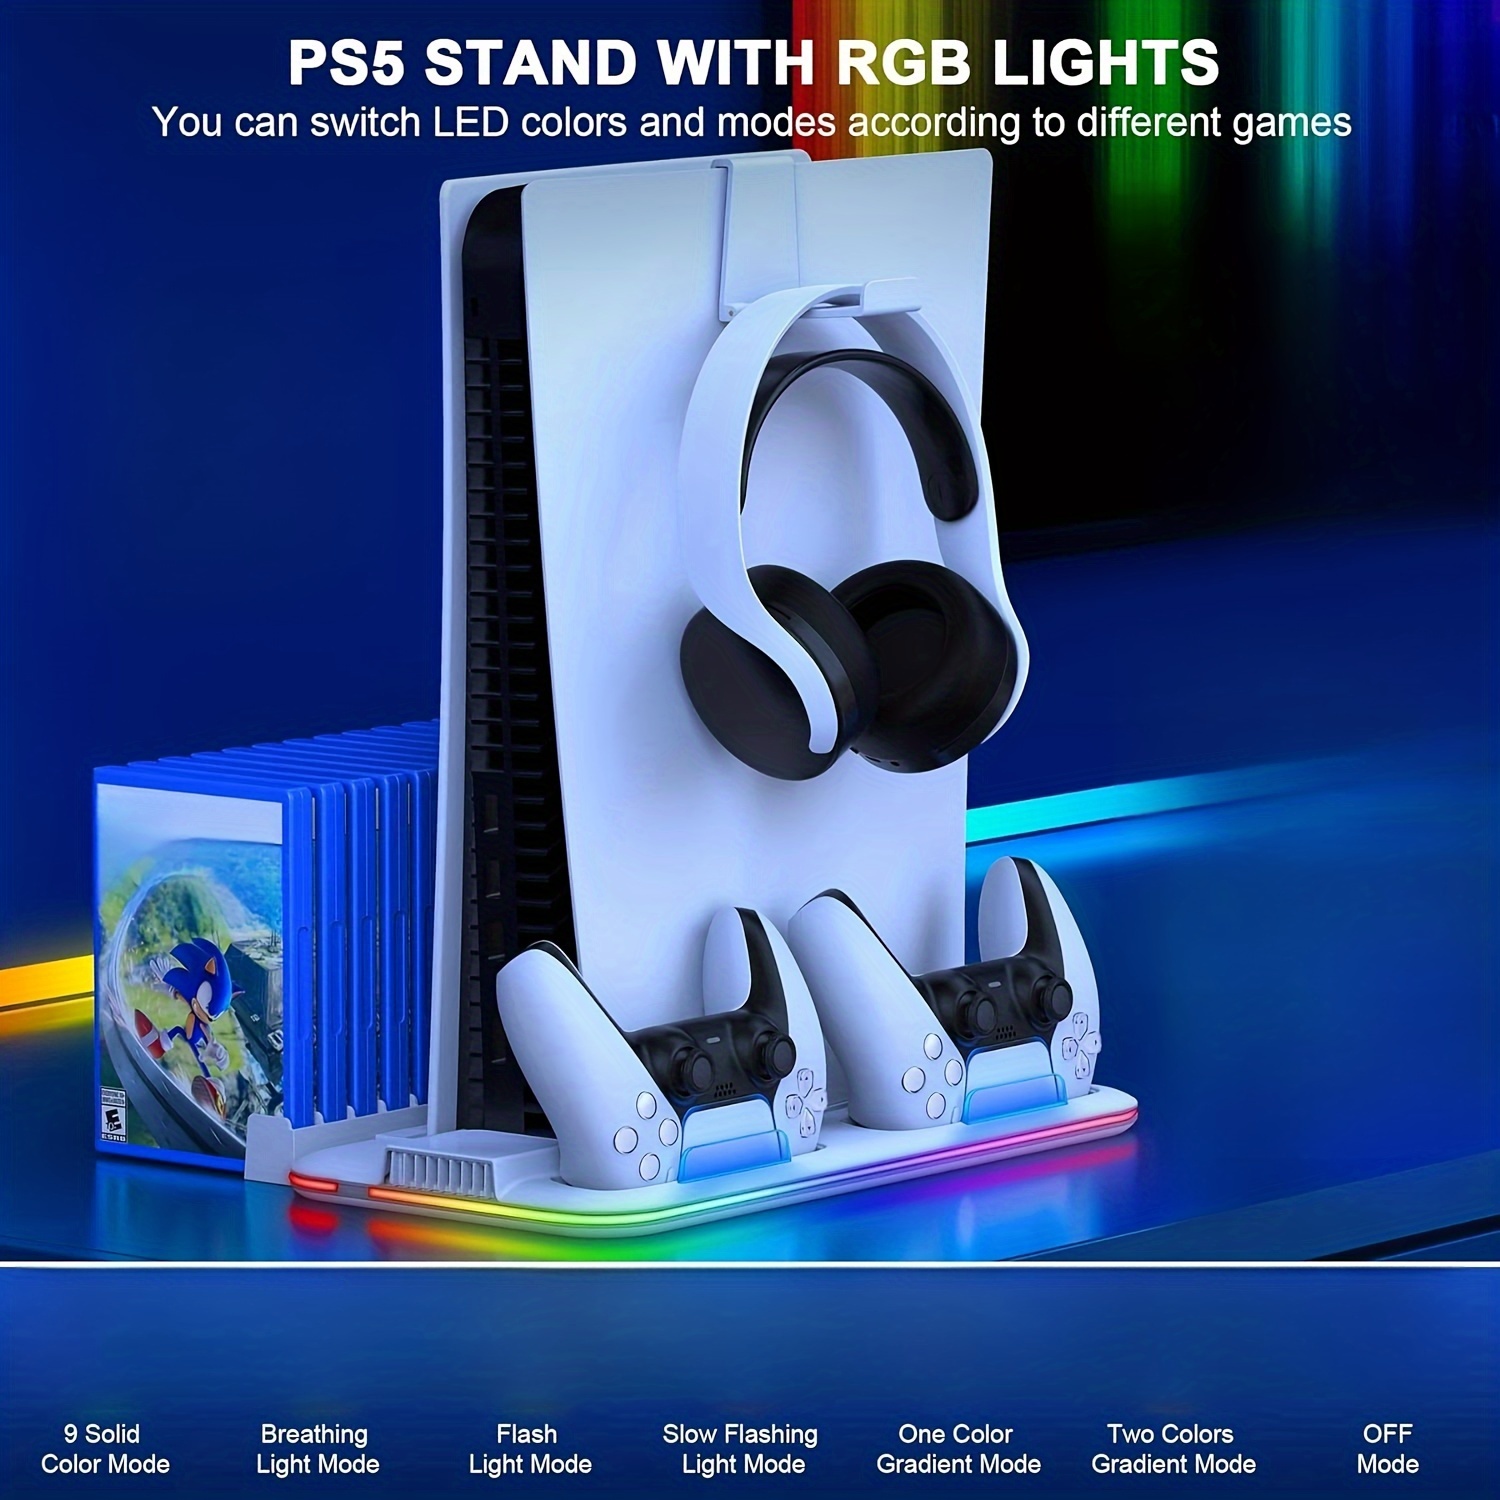 Para PS5 Slim Soporte De La Consola Horizontal Base Para Playstation 5 Disc  Y Ediciones Digitales